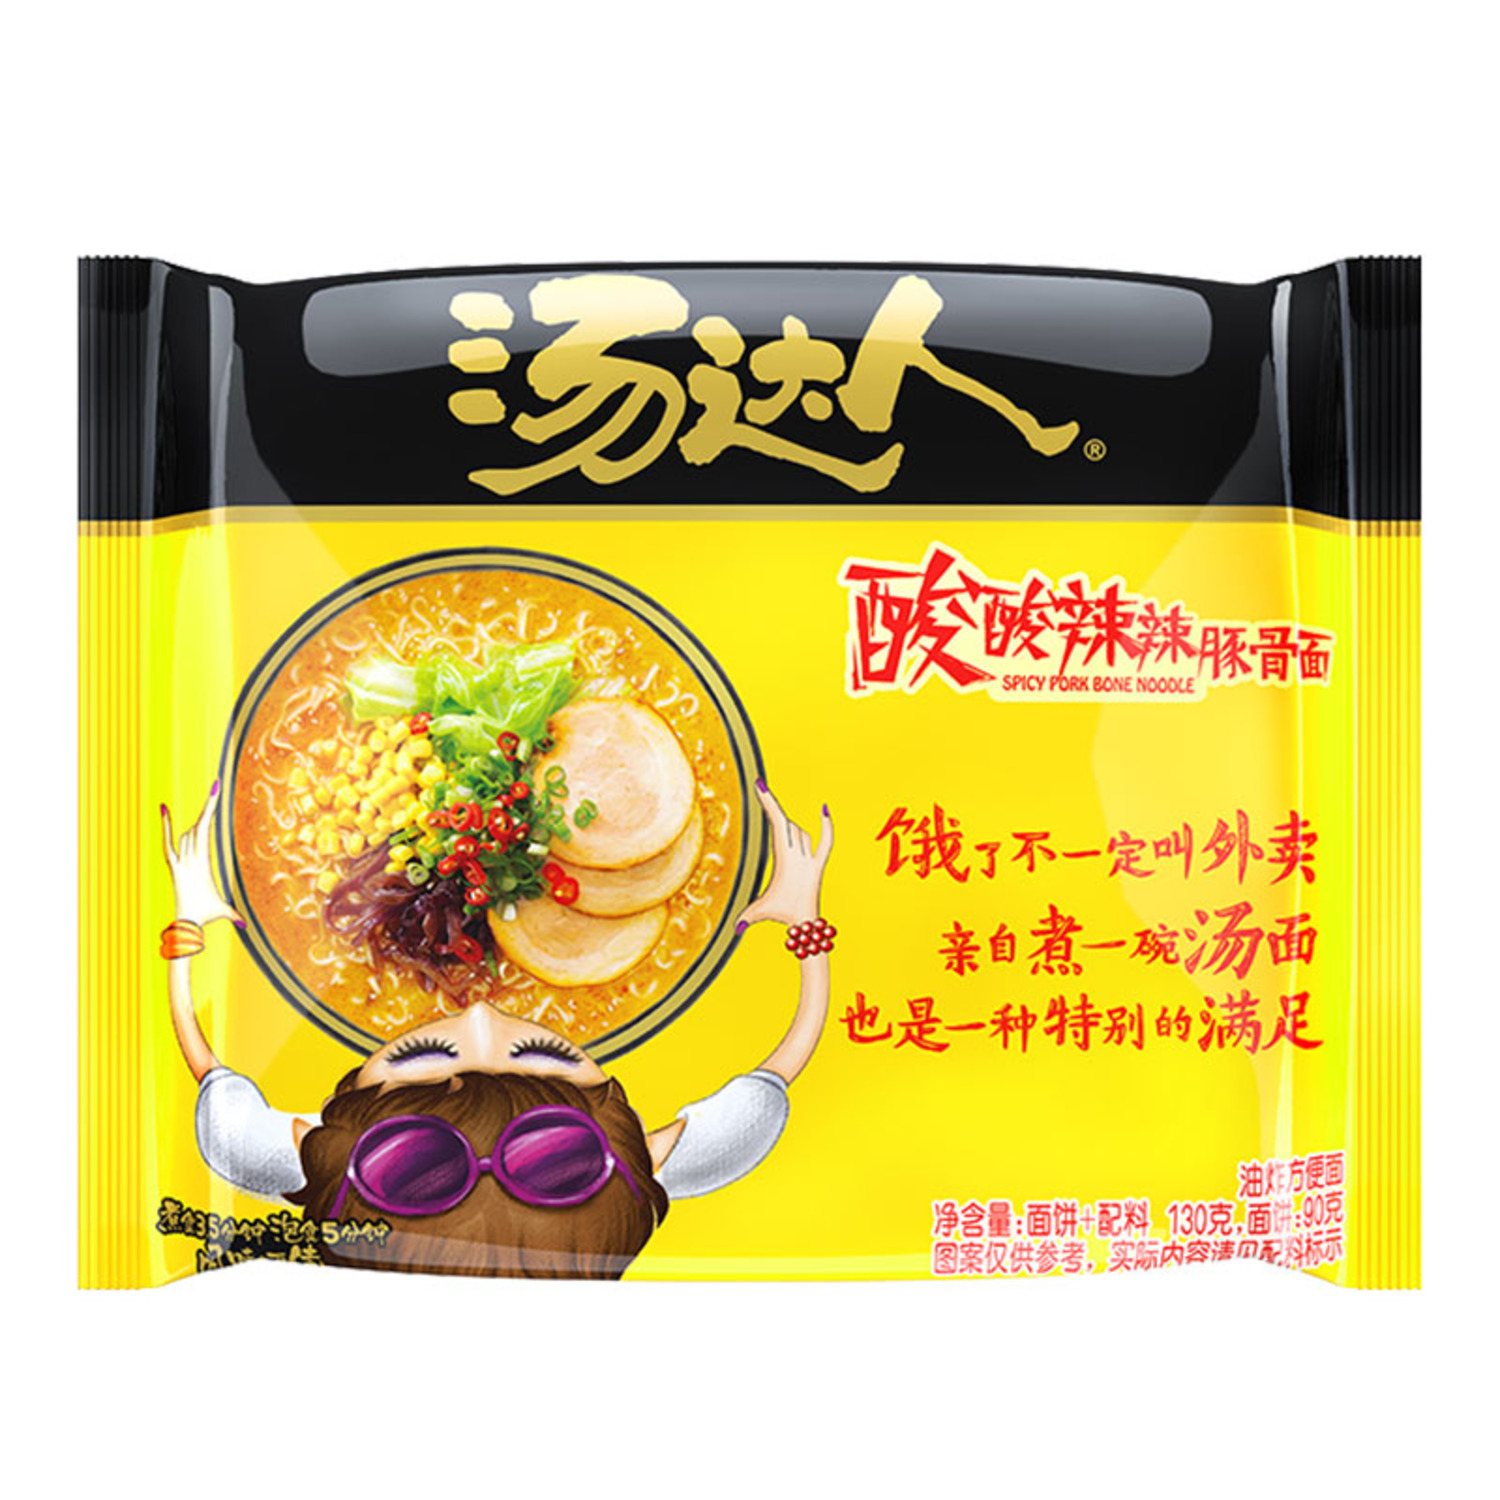 统一汤达人方便面桶装泡面日式酸辣豚骨罗宋汤拉面速食 TangDaRen Instant Cup Noodles | Shopee Malaysia